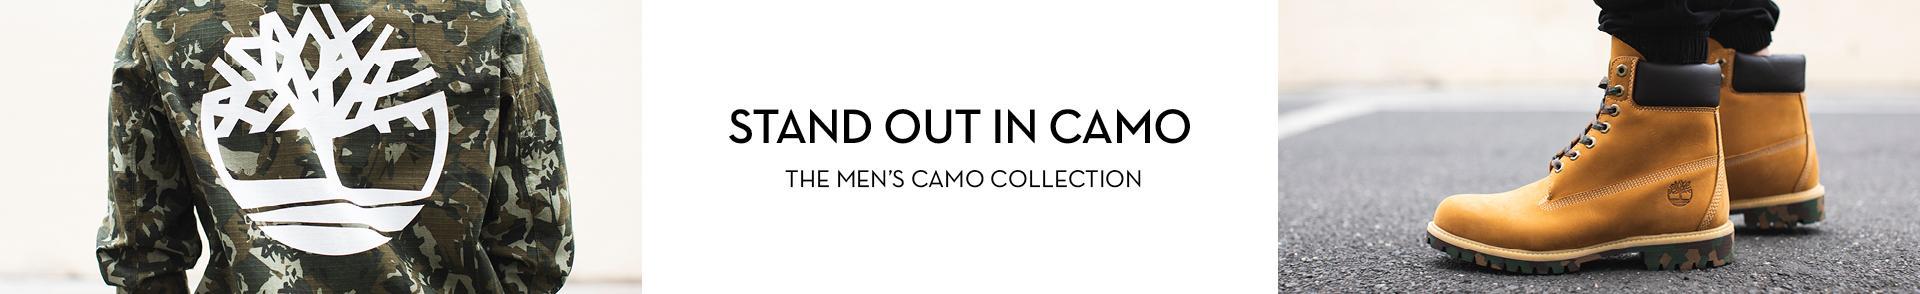 Camo Collection